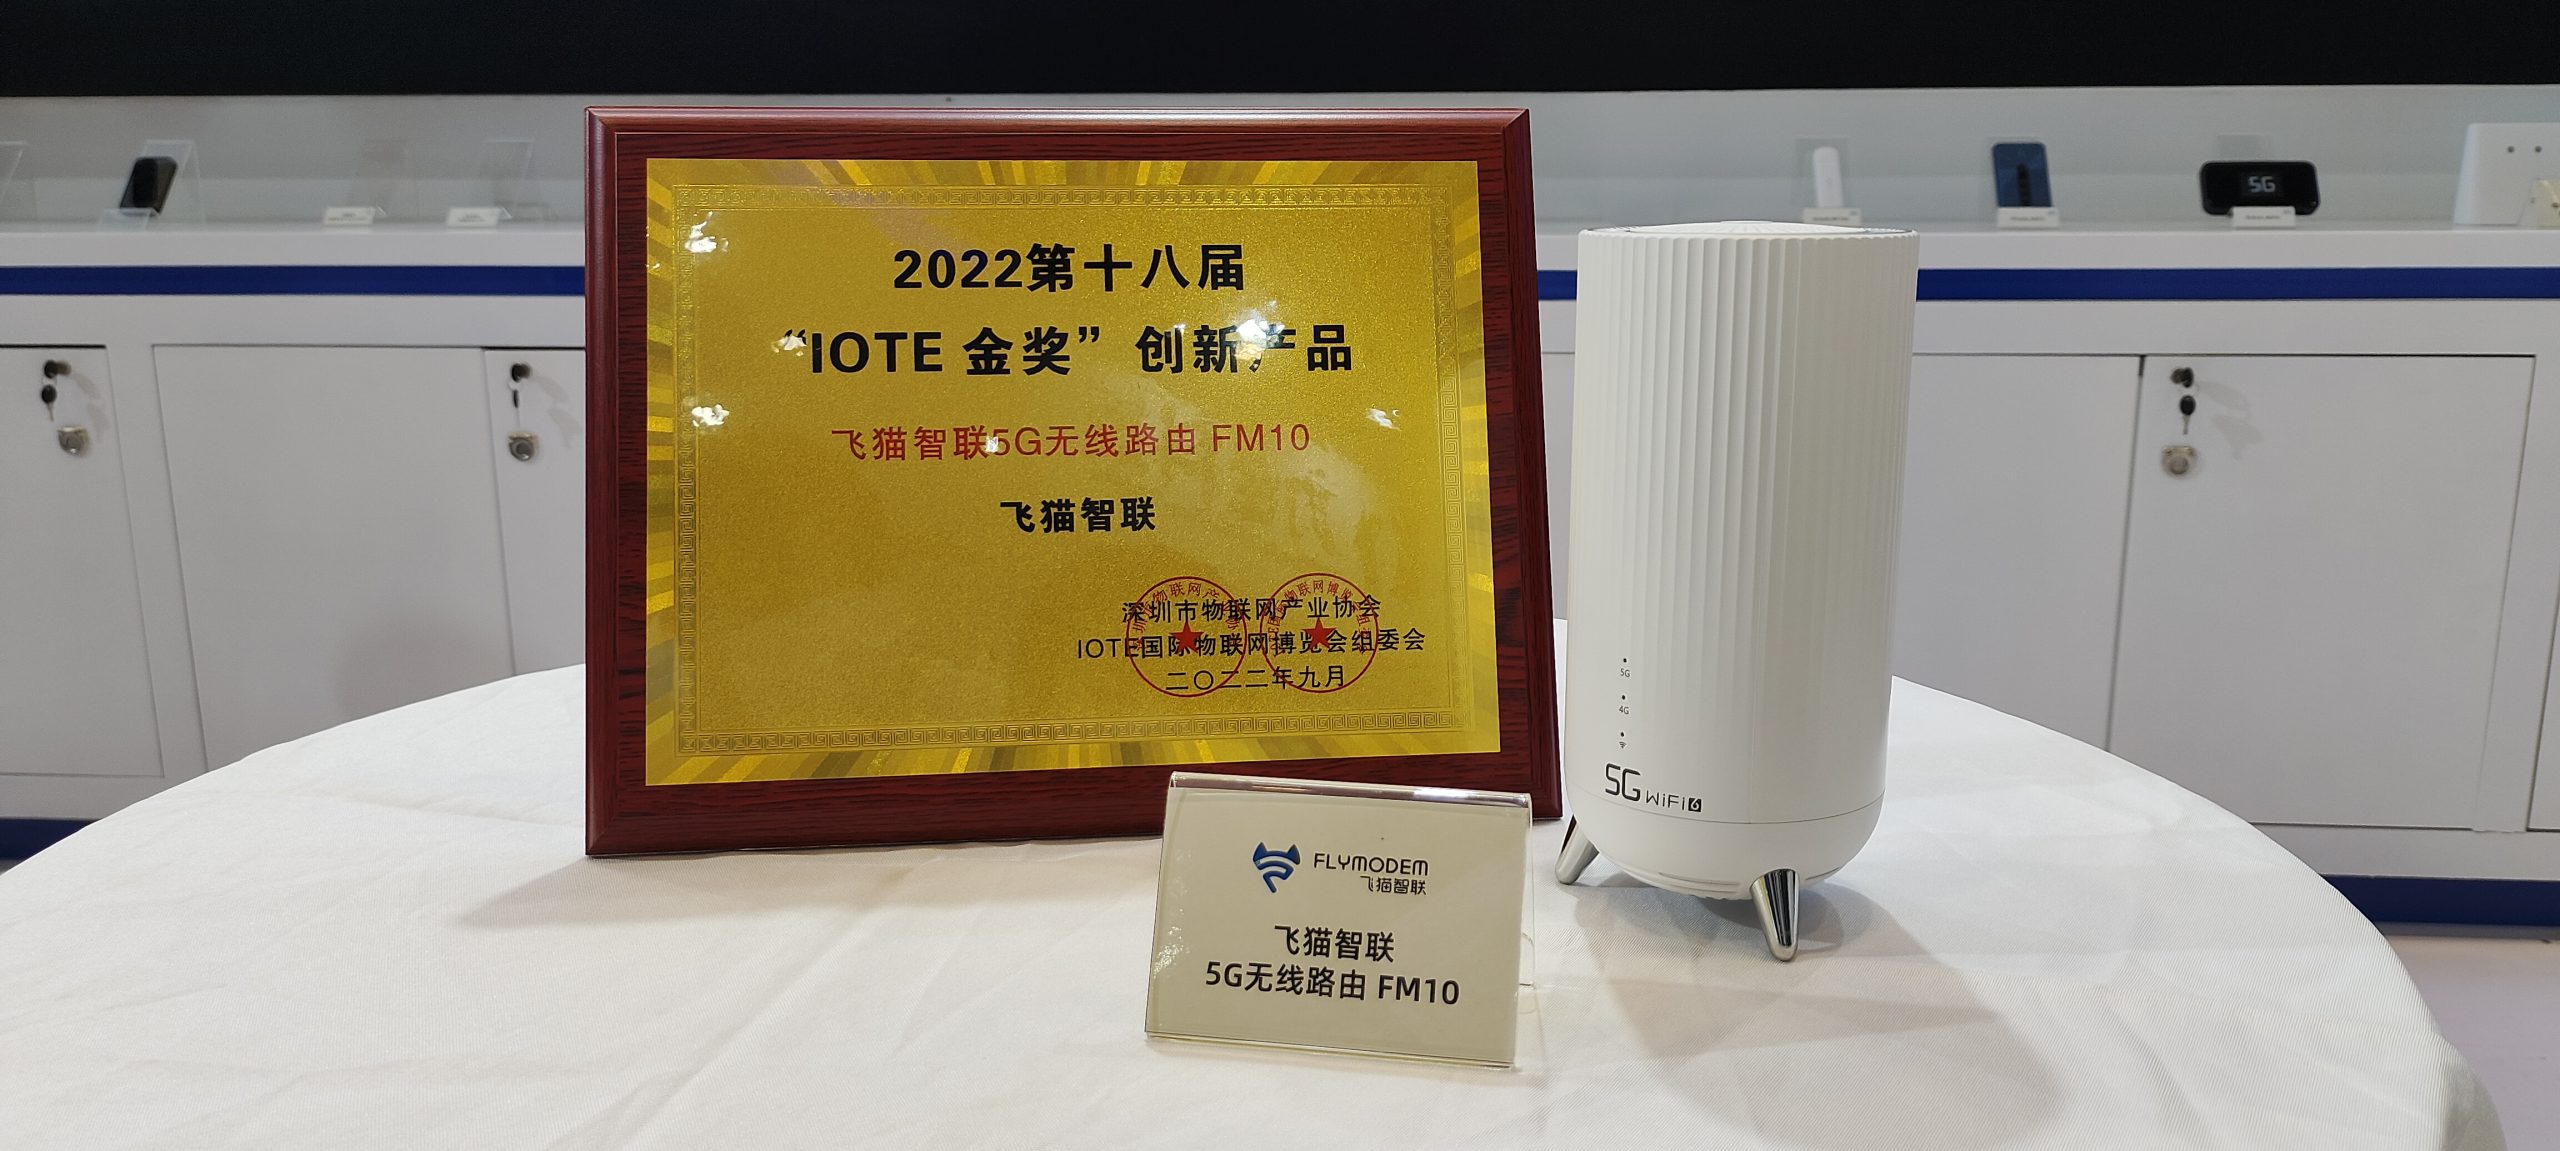 飞猫智联5G F10荣获“IOTE 2022 金奖创新产品”